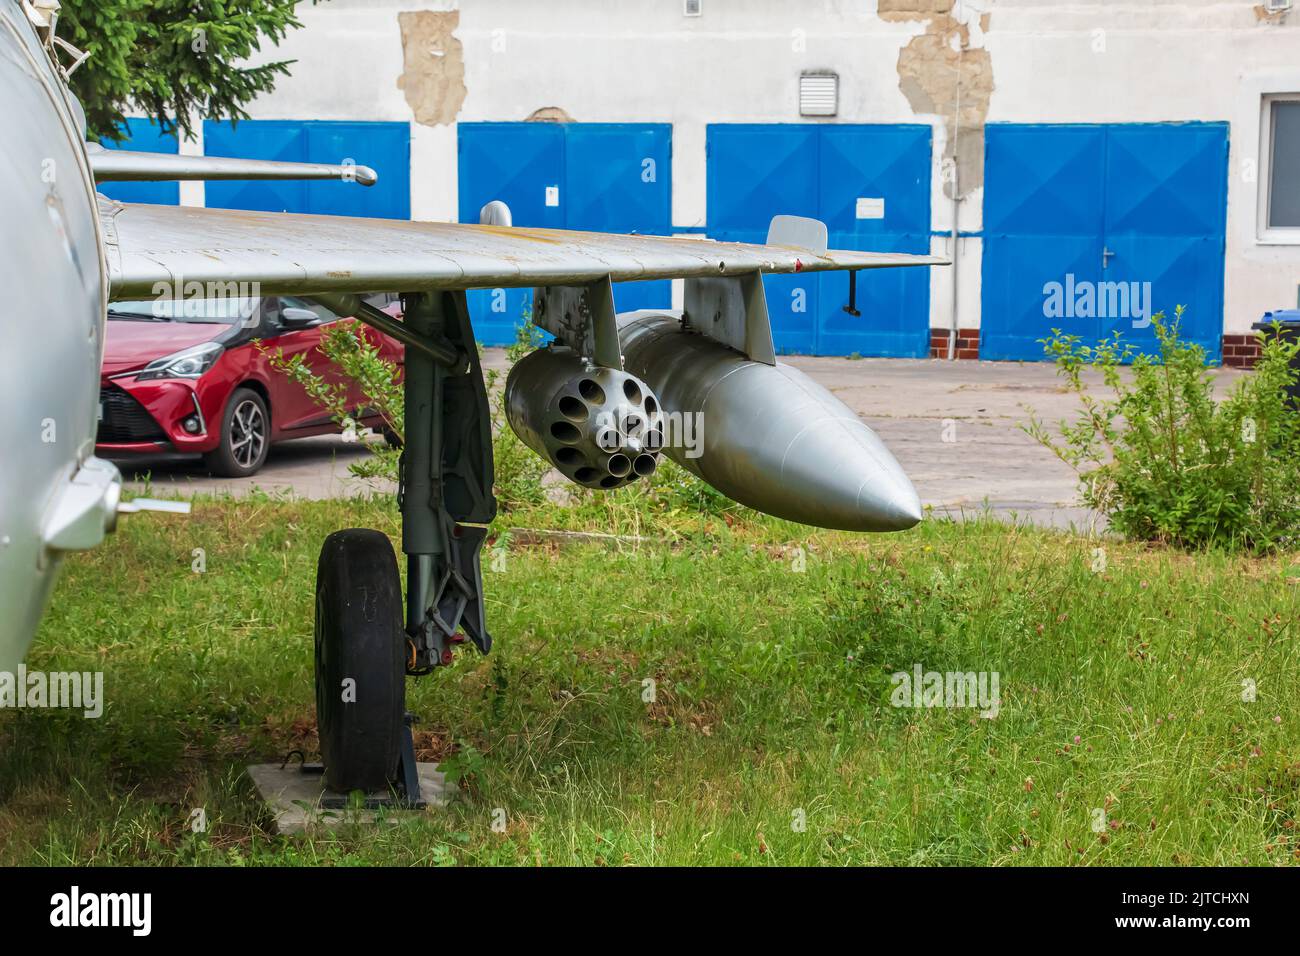 Aeroclub, Nitra, Slovakia - 06.16.2022: MiG-21MF on the territory of the Aeroclub in Nitra. Stock Photo